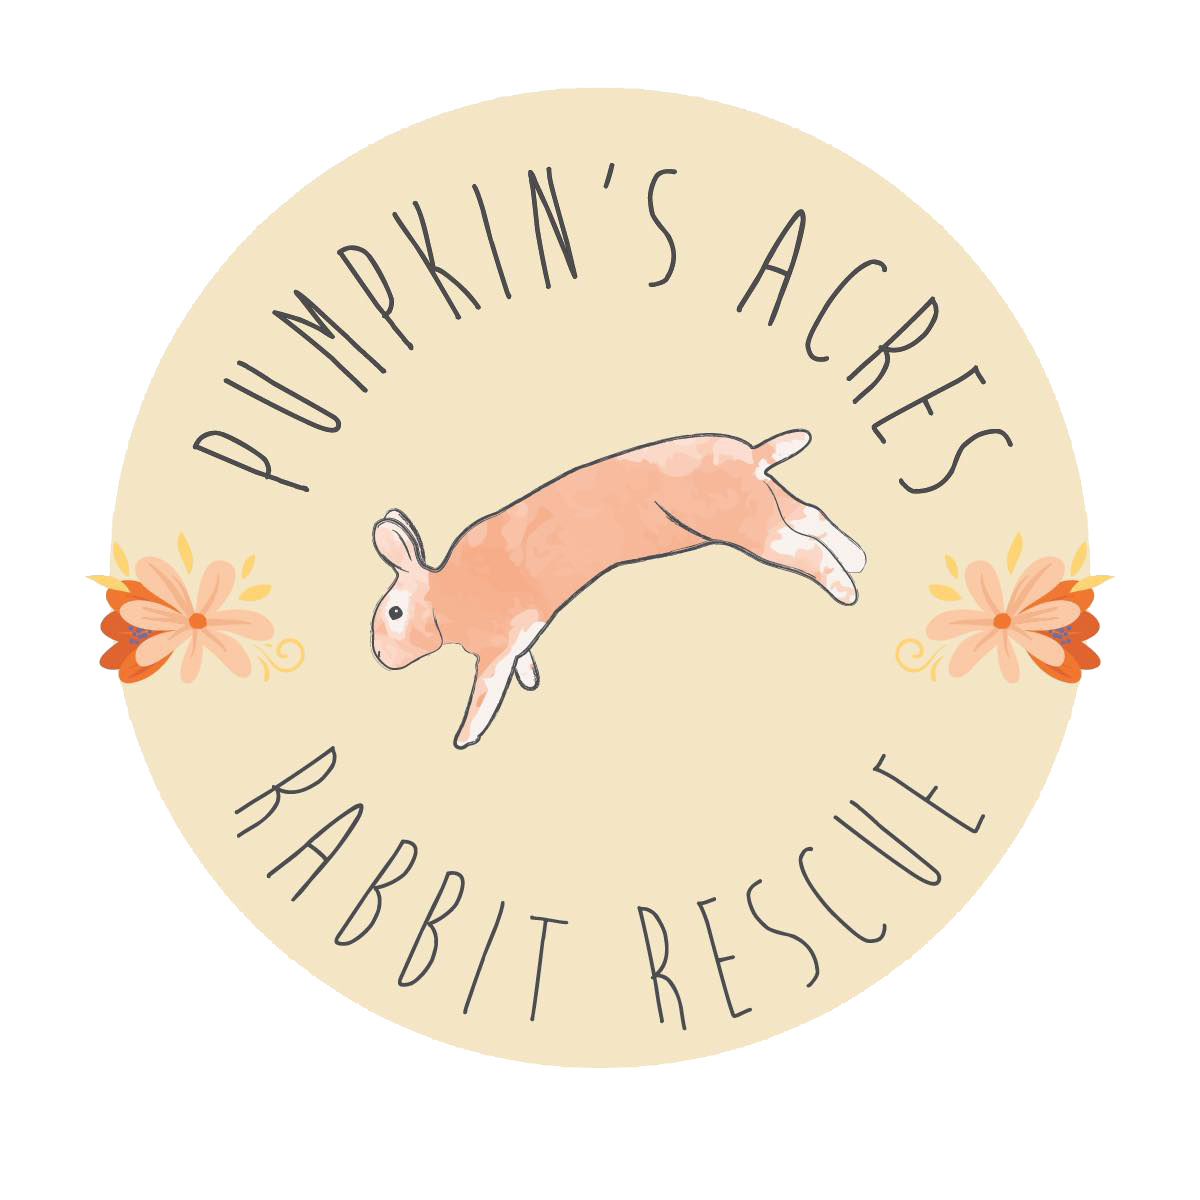 Pumpkin’s Acres Rabbit Rescue Supplies image